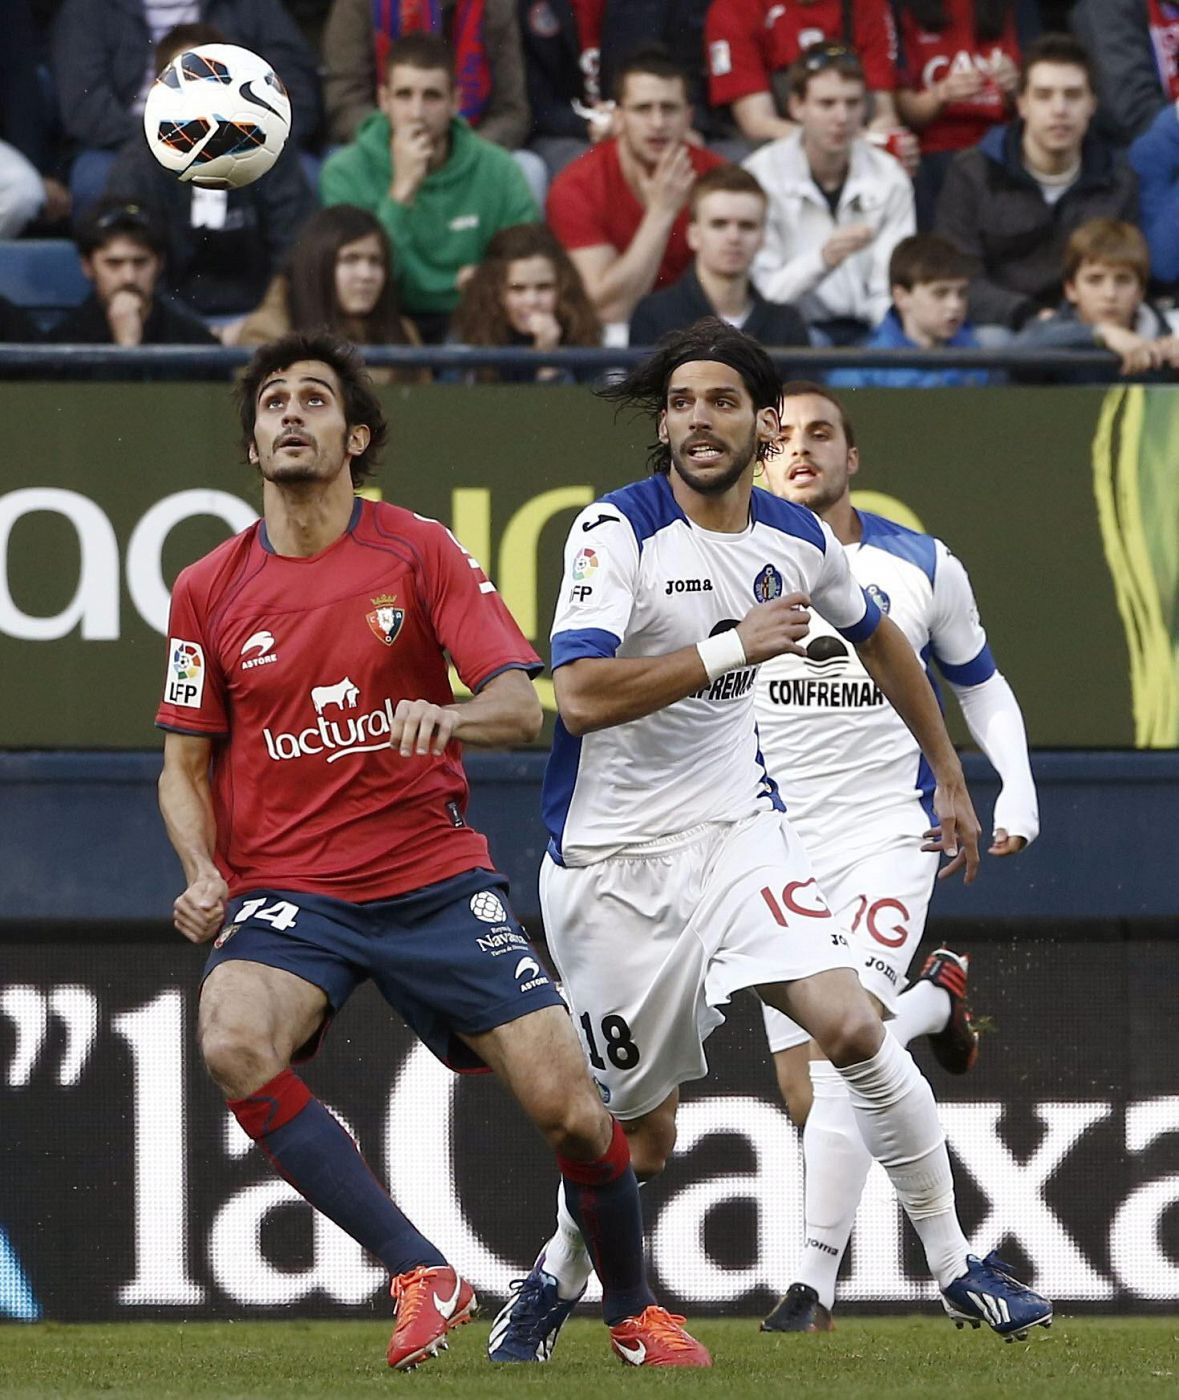 El jugador de Osasuna Arribas trata de controlar el balón ante Lafita, del Getafe.